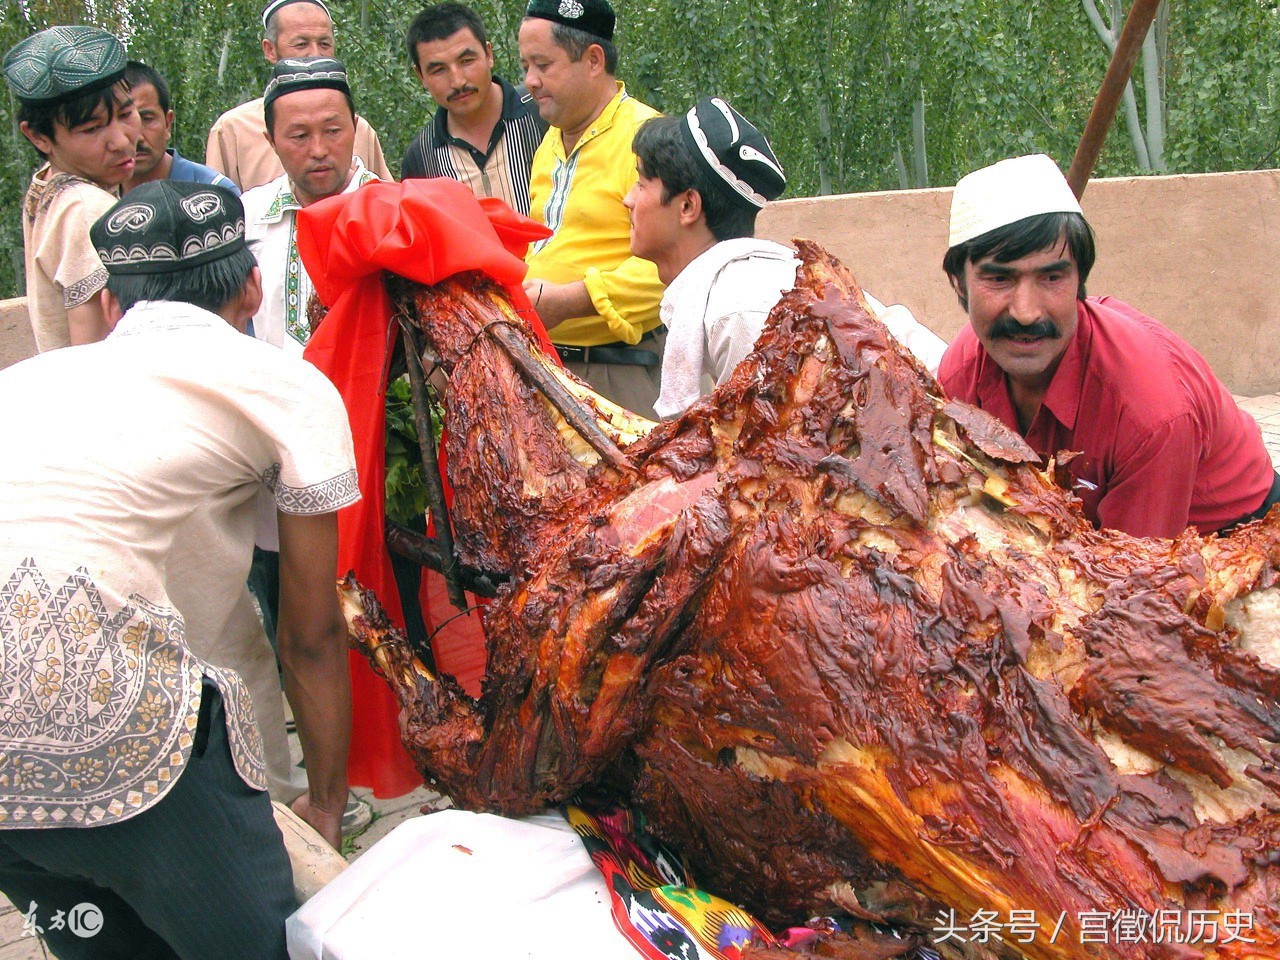 实拍:新疆名菜"骆驼烤",每公斤120元,1小时就被抢光了!